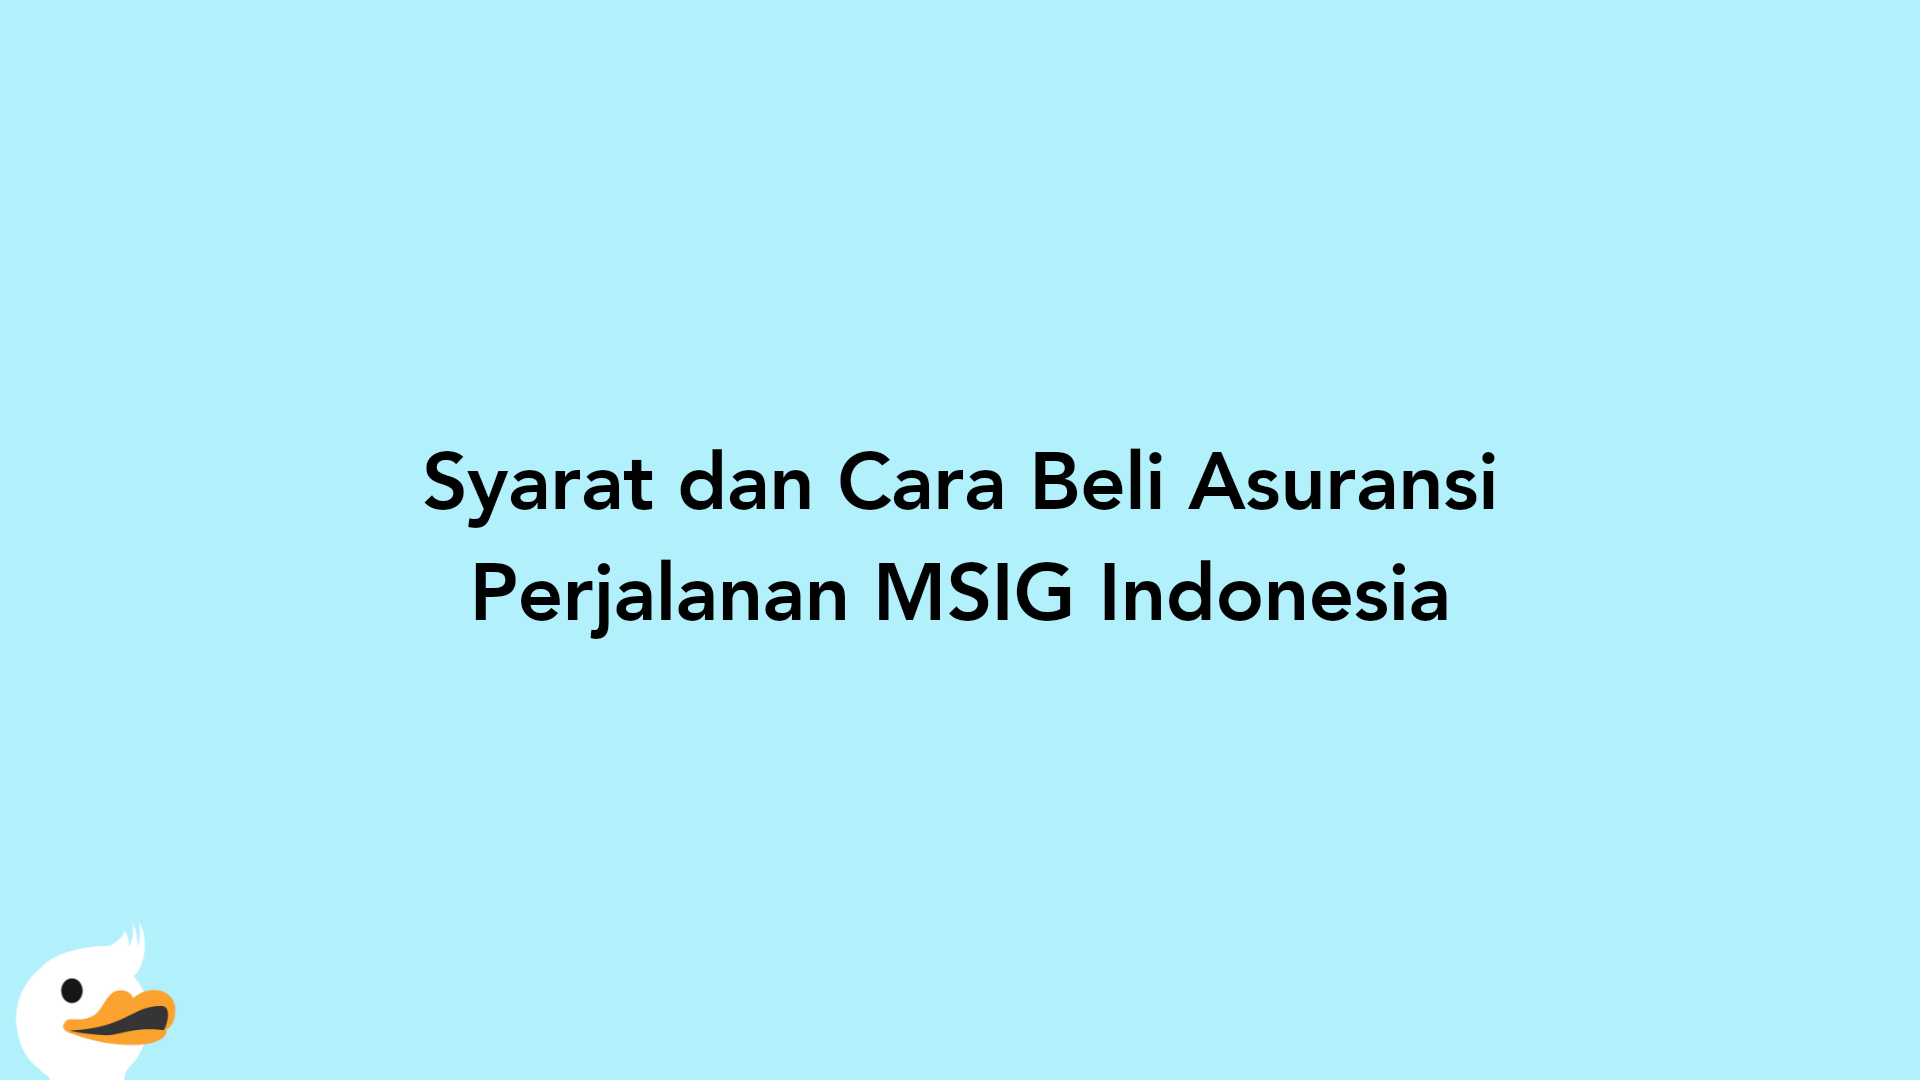 Syarat dan Cara Beli Asuransi Perjalanan MSIG Indonesia